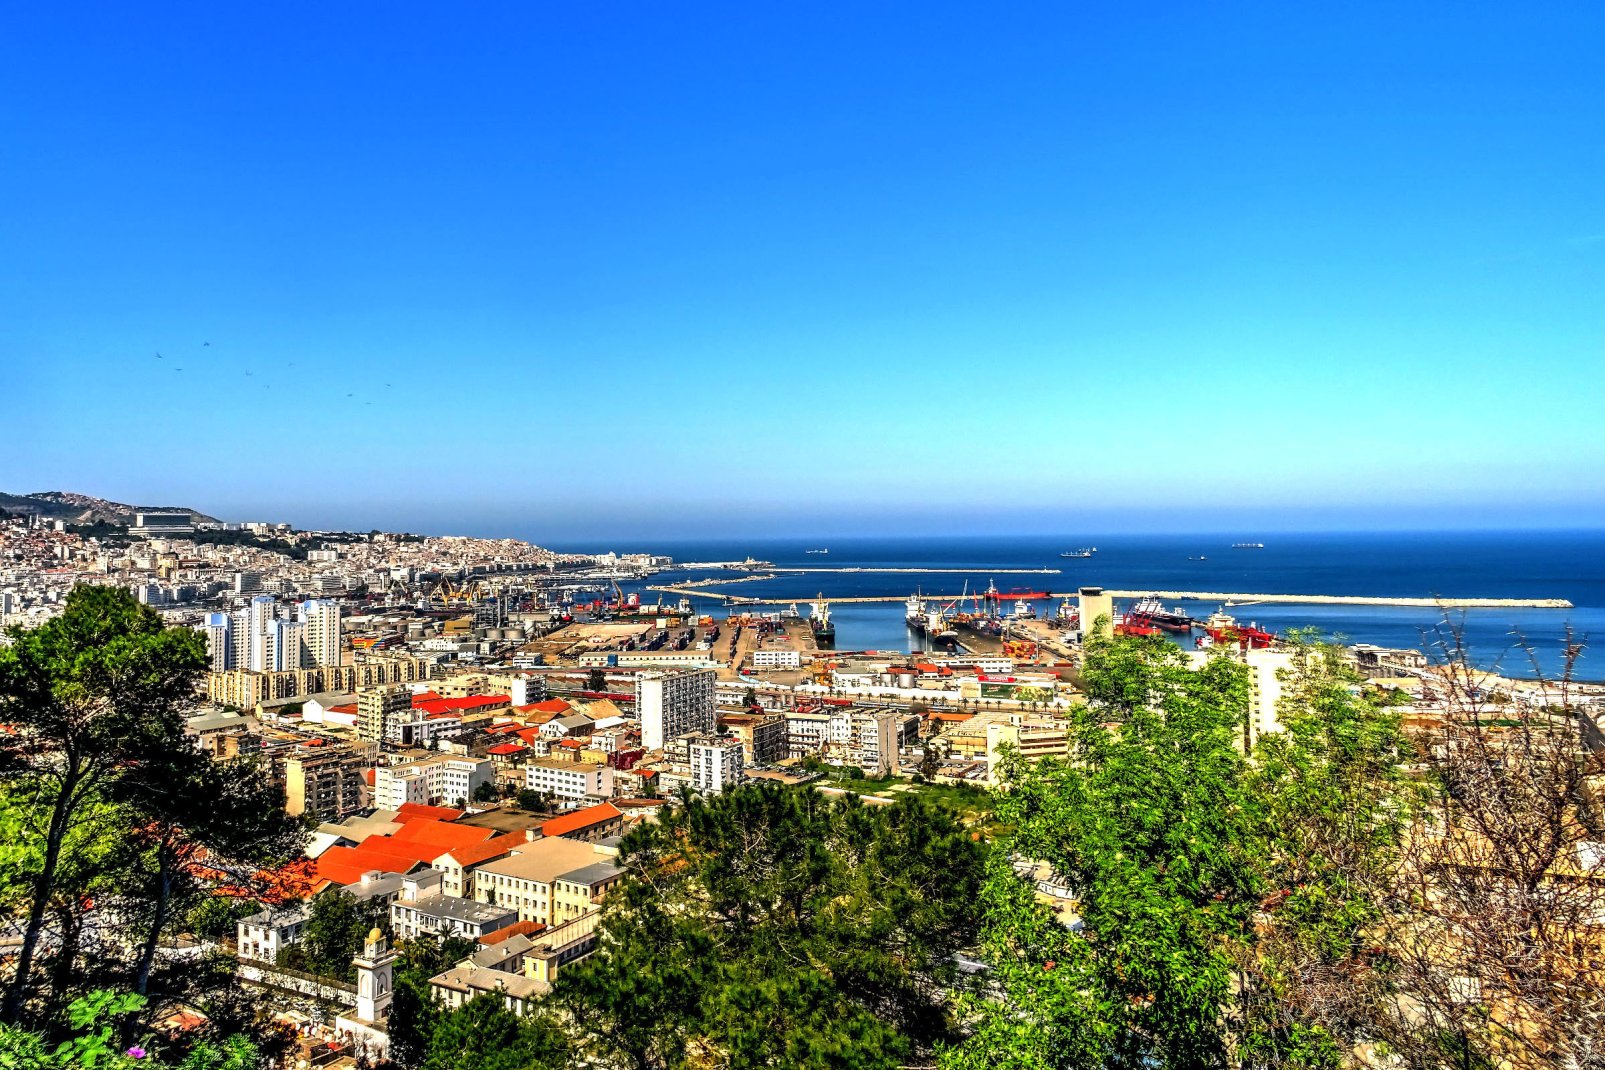 Alger est bâtie sur un site exceptionnel qui surplombe la mer Méditerranée. La partie moderne de la ville se trouve sur le plateau au niveau de la mer.